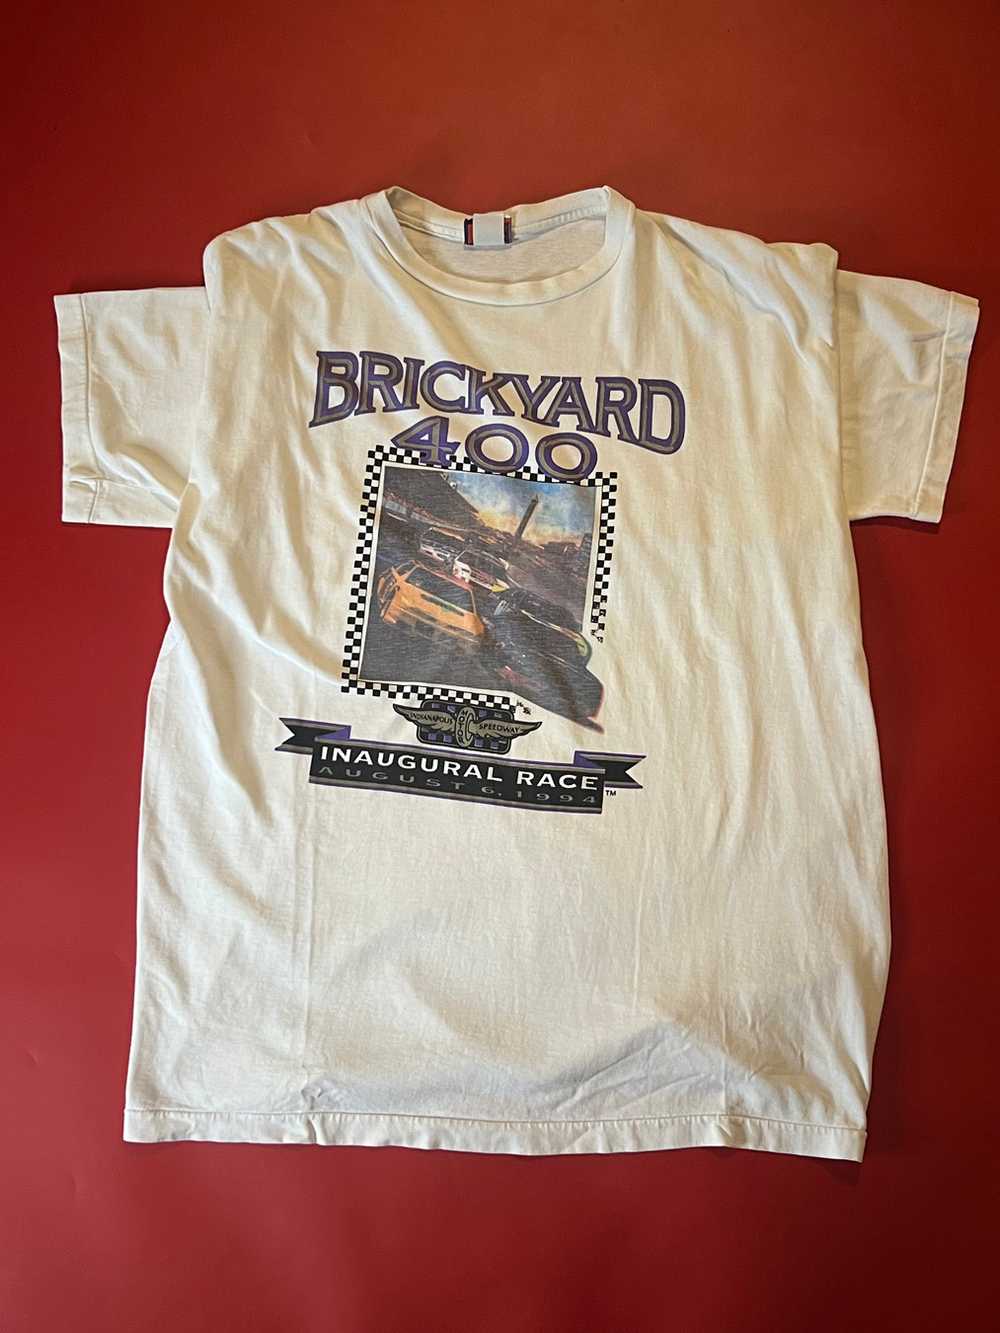 90’s Grey Brickyard 400 Shirt - image 1